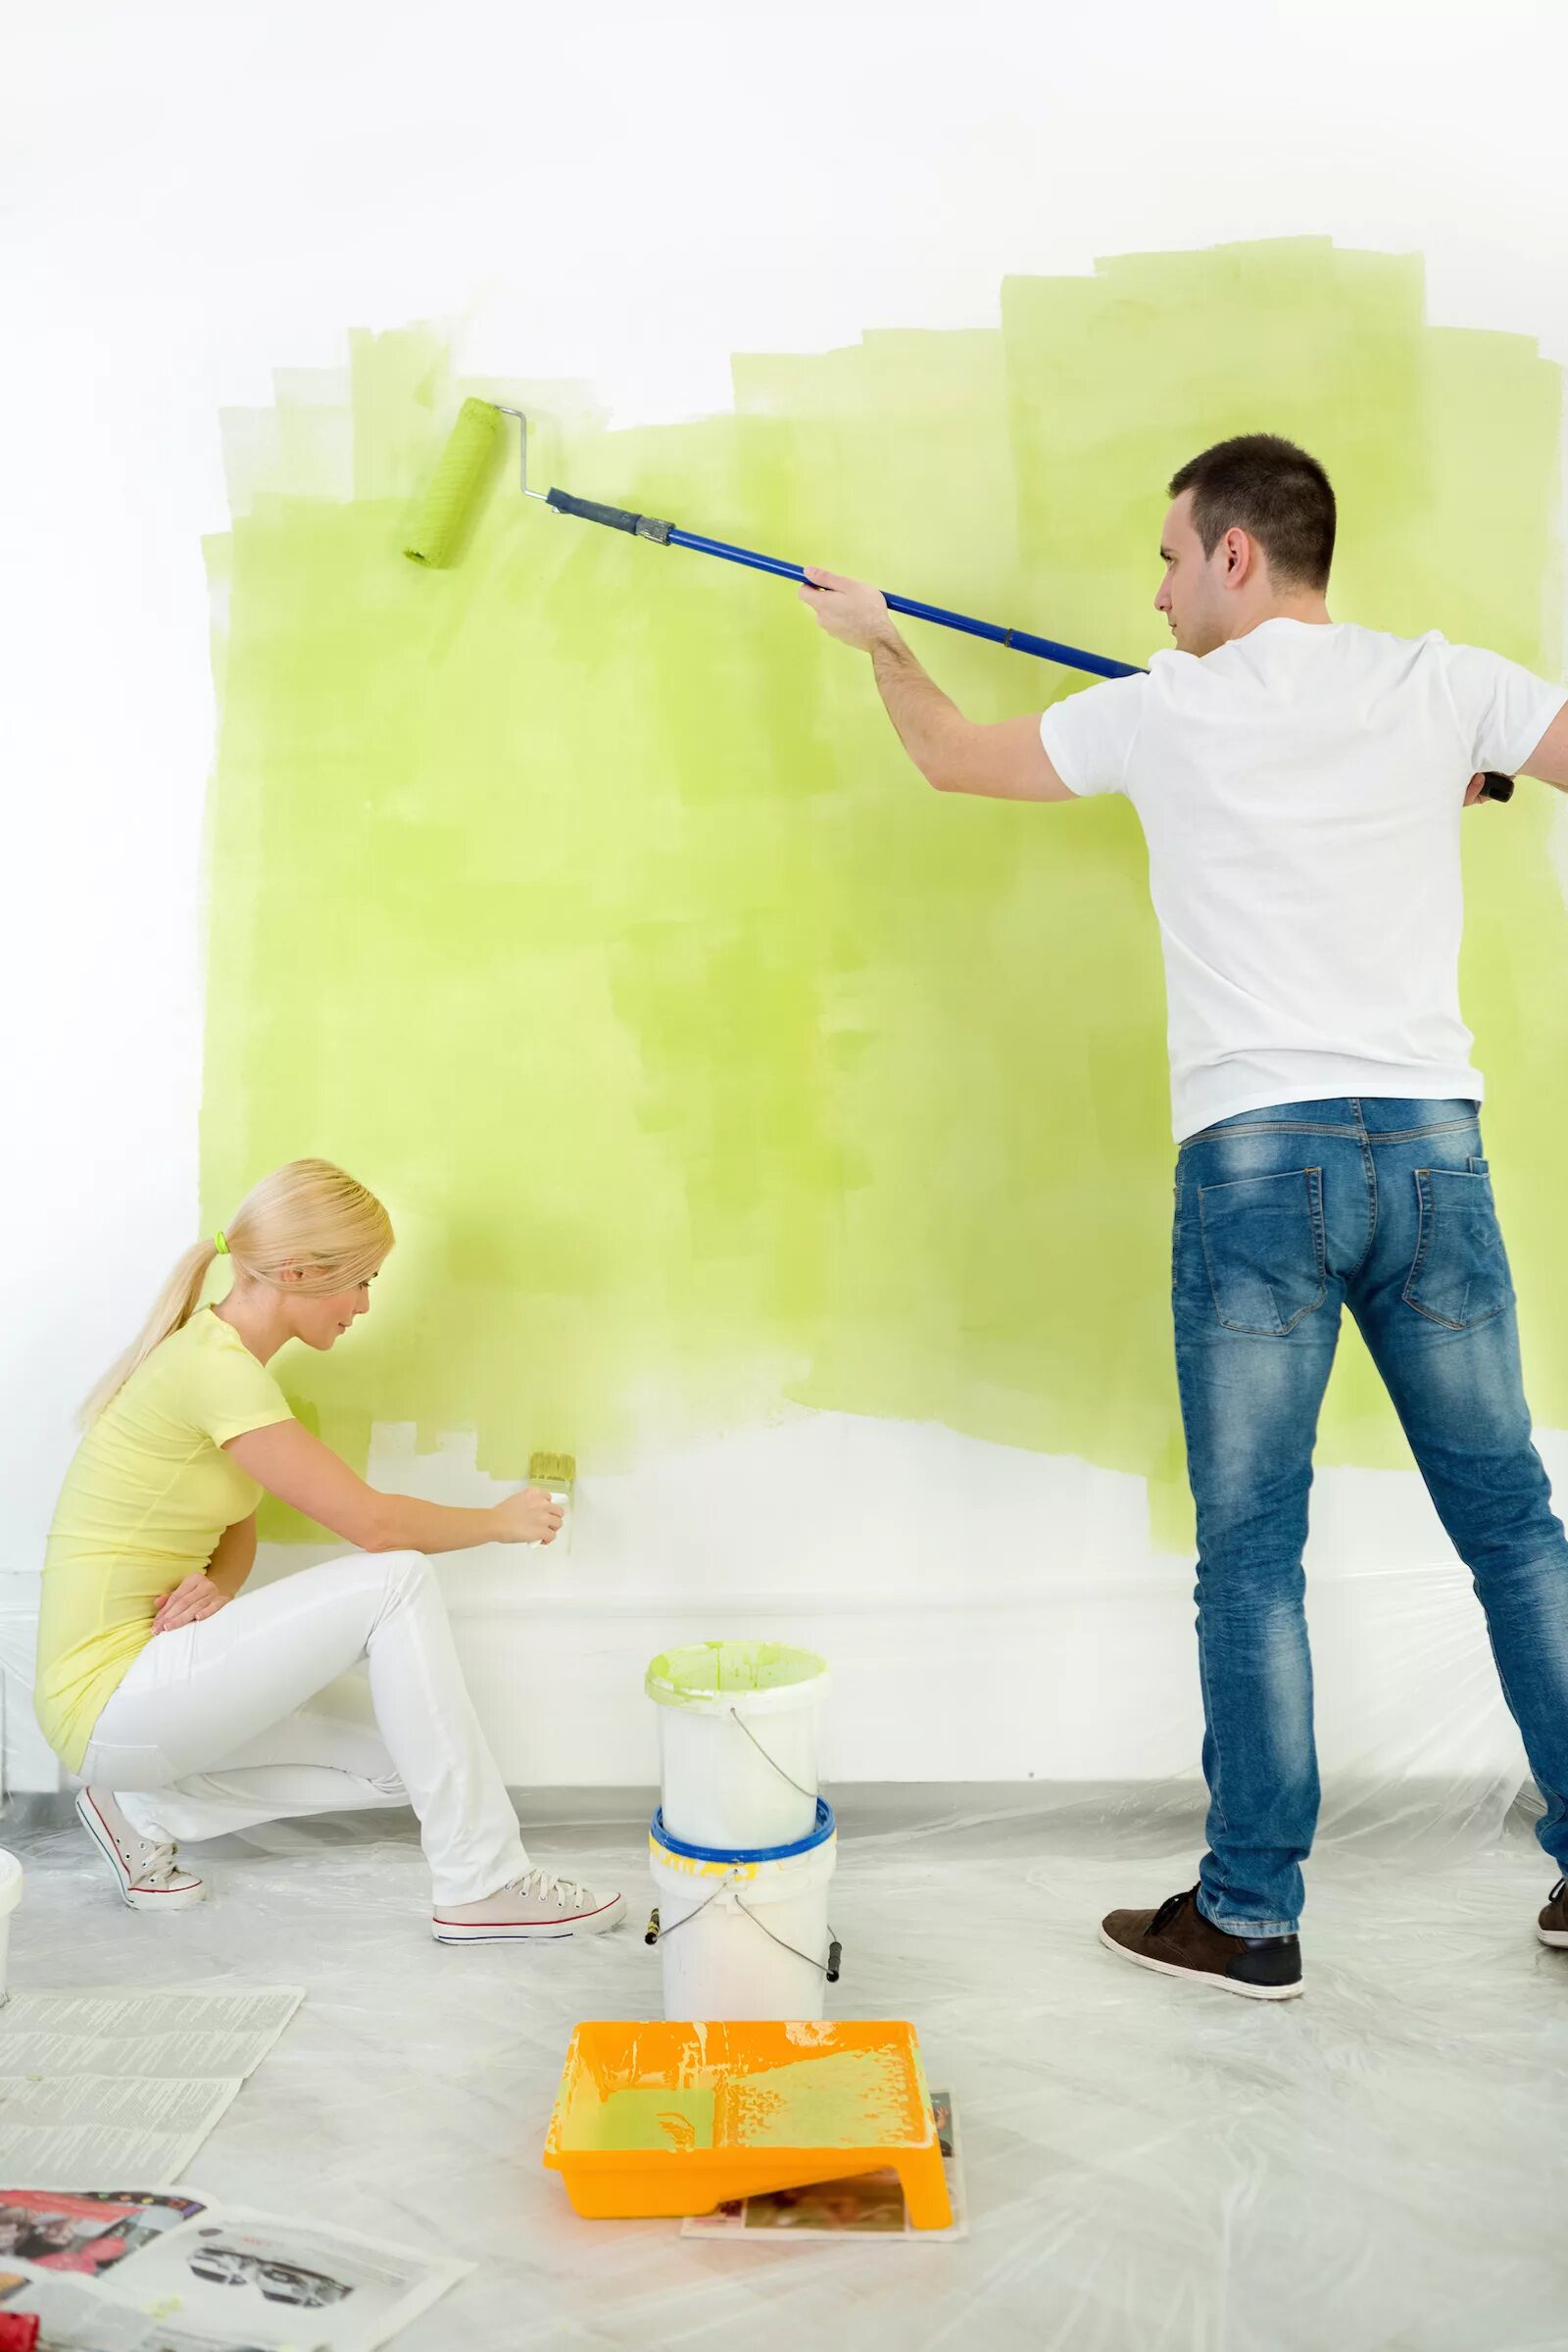 Краска для стен в квартире. Крашенные стены. Покраска стен в квартире. Окрашивание стен. Лучшие краски для покраски обоев